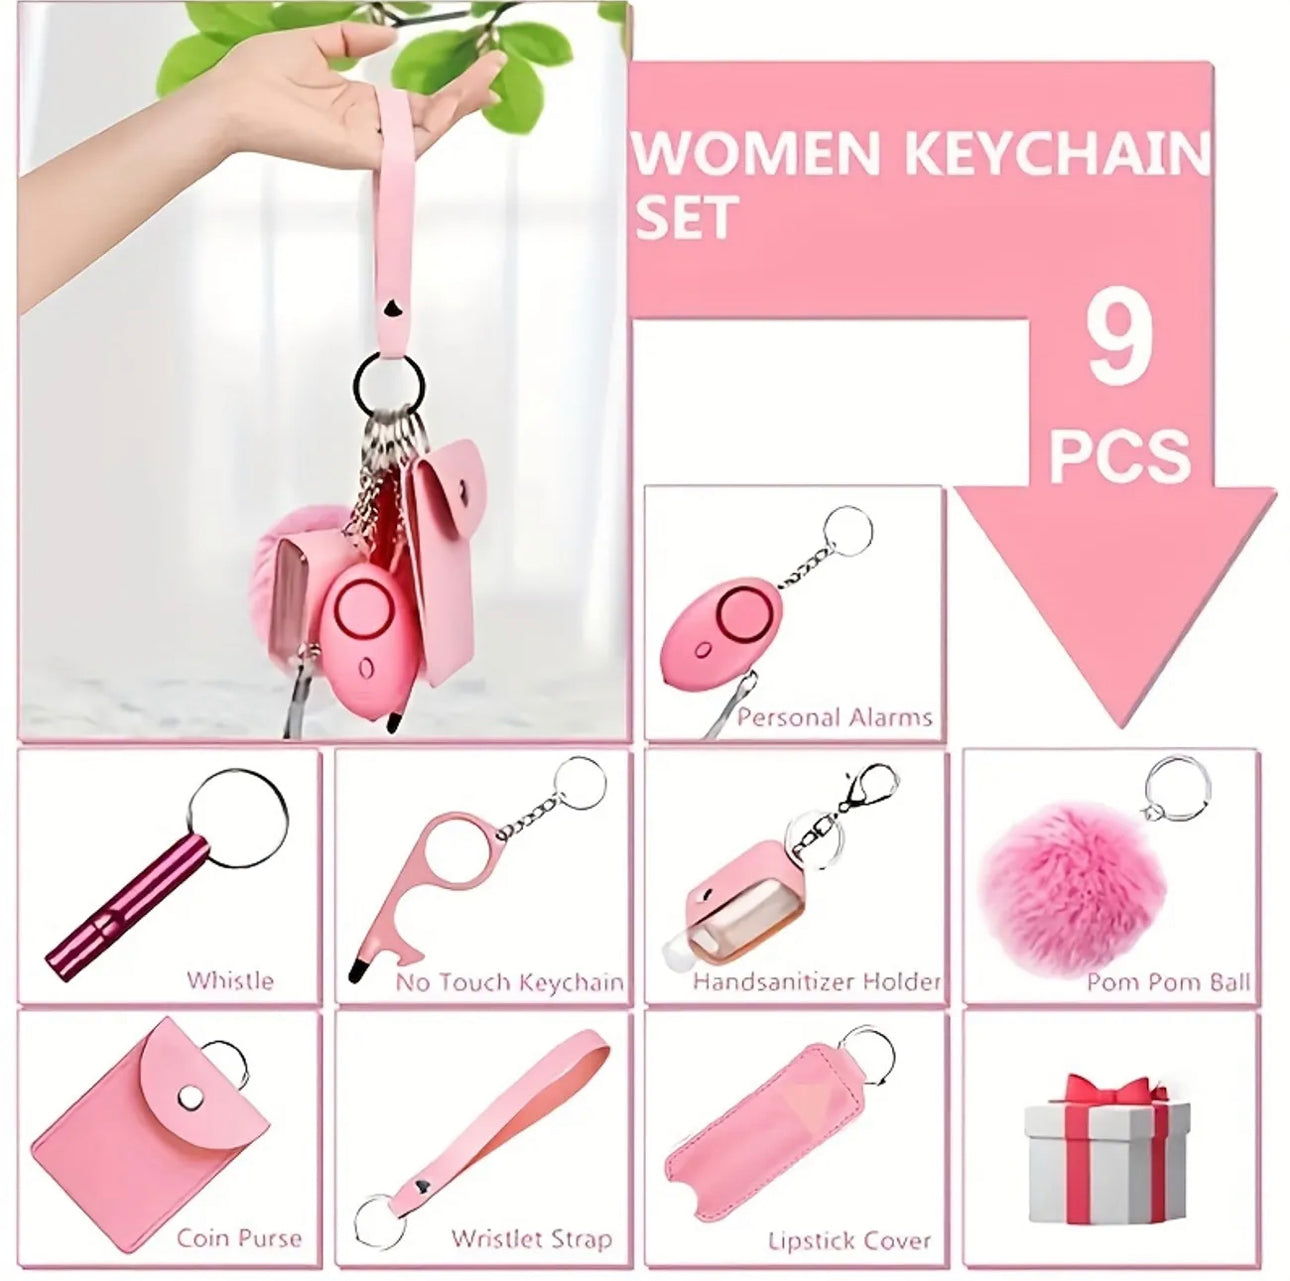 Women’s Safety Keychain Set